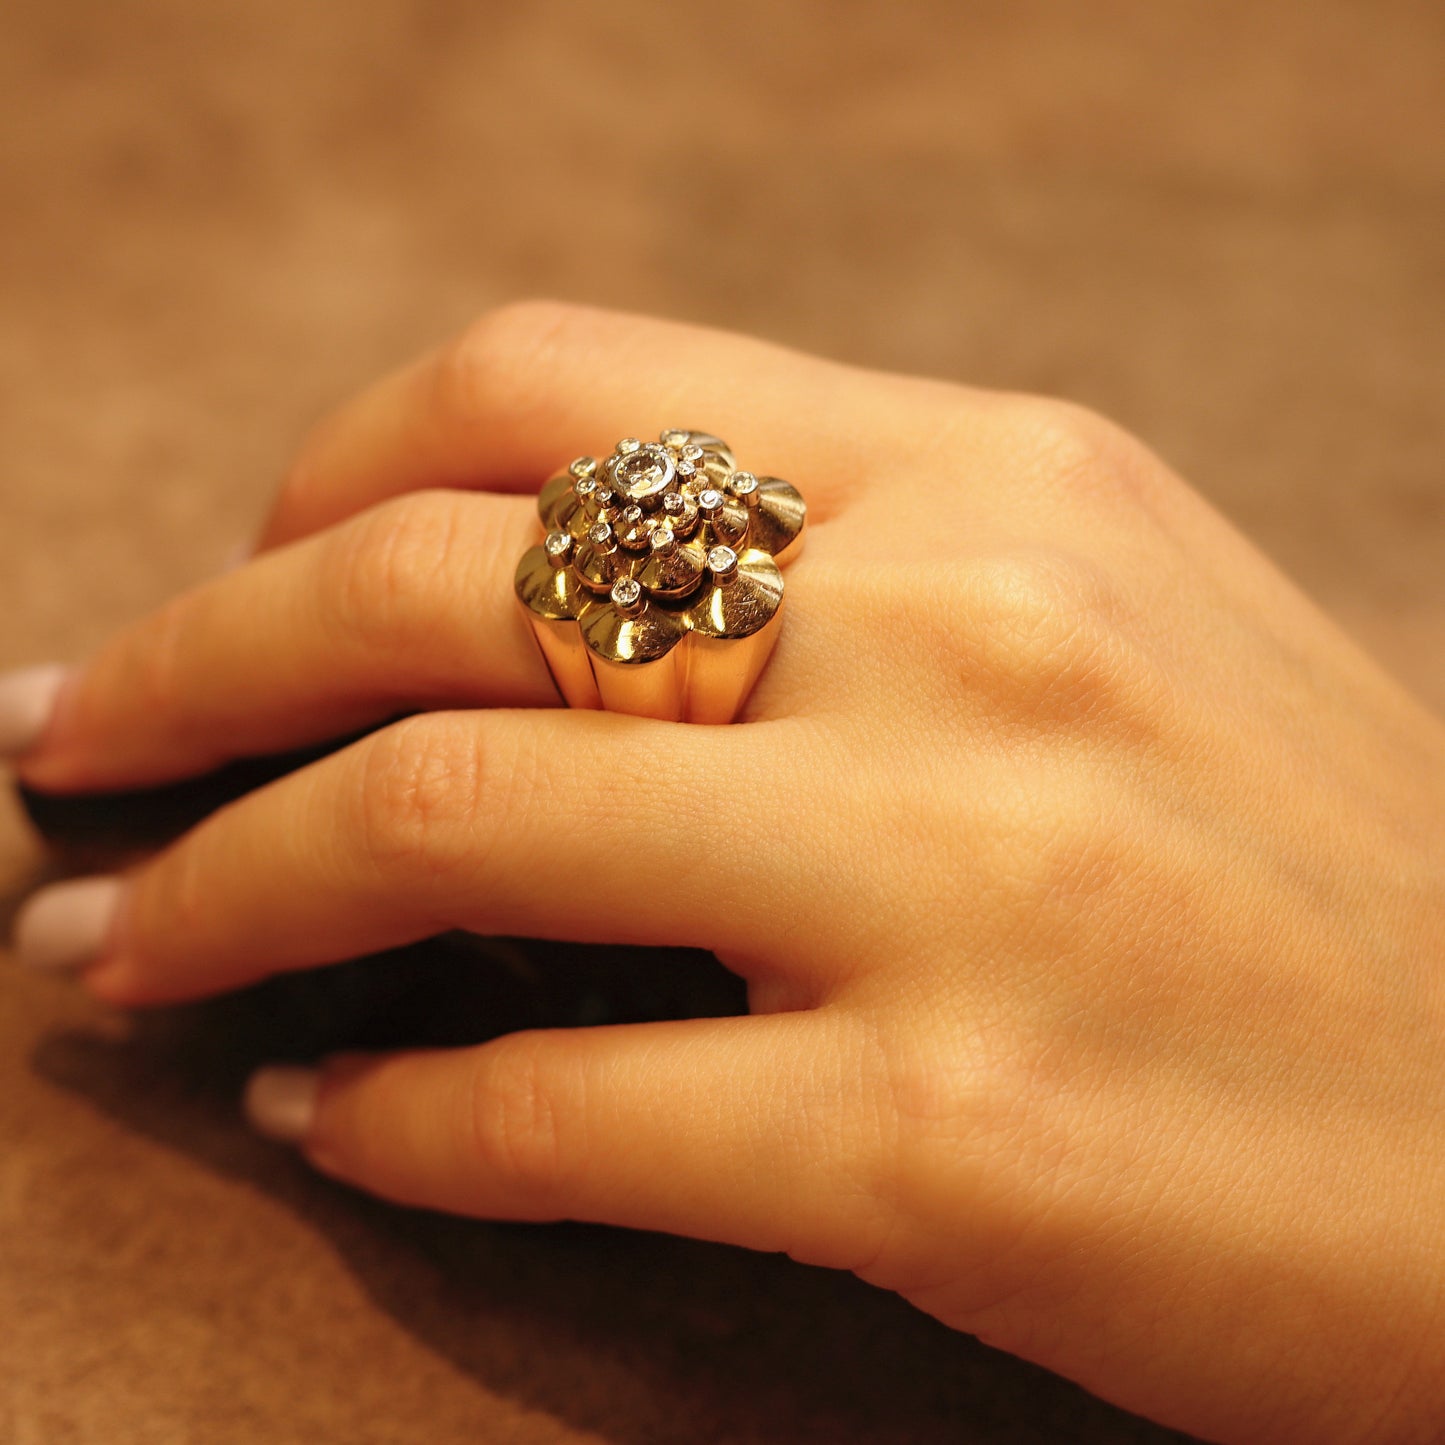 French 1940s 18KT Yellow Gold Diamond Ring on finger on finger